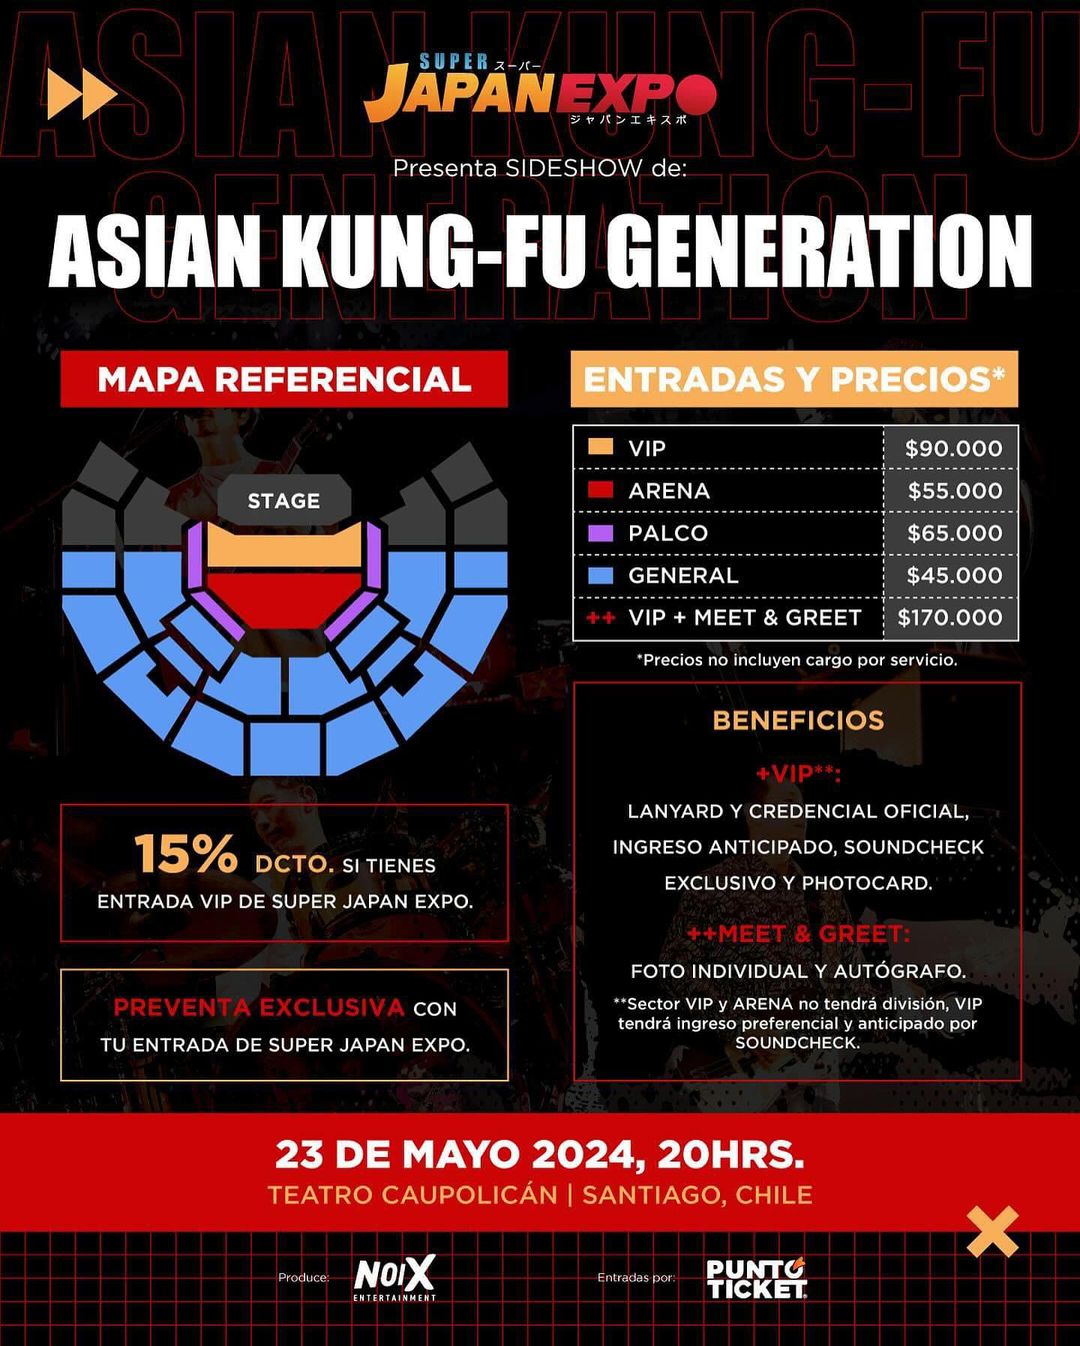 Información de entradas para concierto de Asian Kung-Fu Generation en Chile